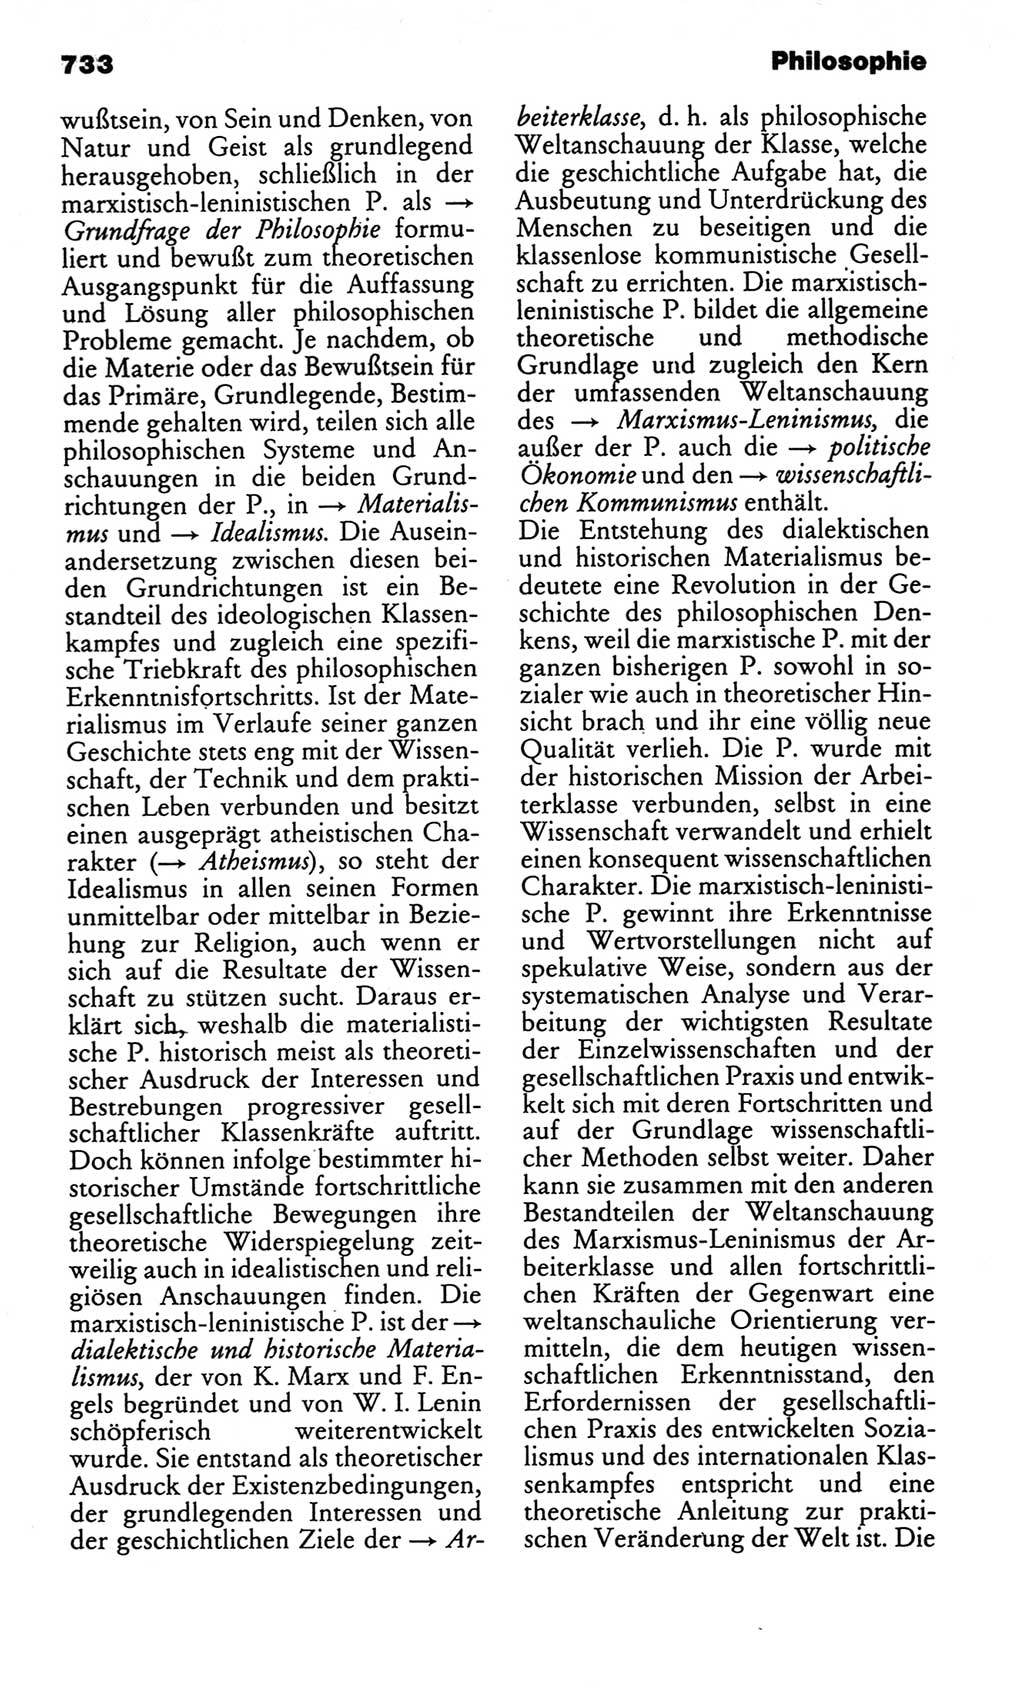 Kleines politisches Wörterbuch [Deutsche Demokratische Republik (DDR)] 1986, Seite 733 (Kl. pol. Wb. DDR 1986, S. 733)